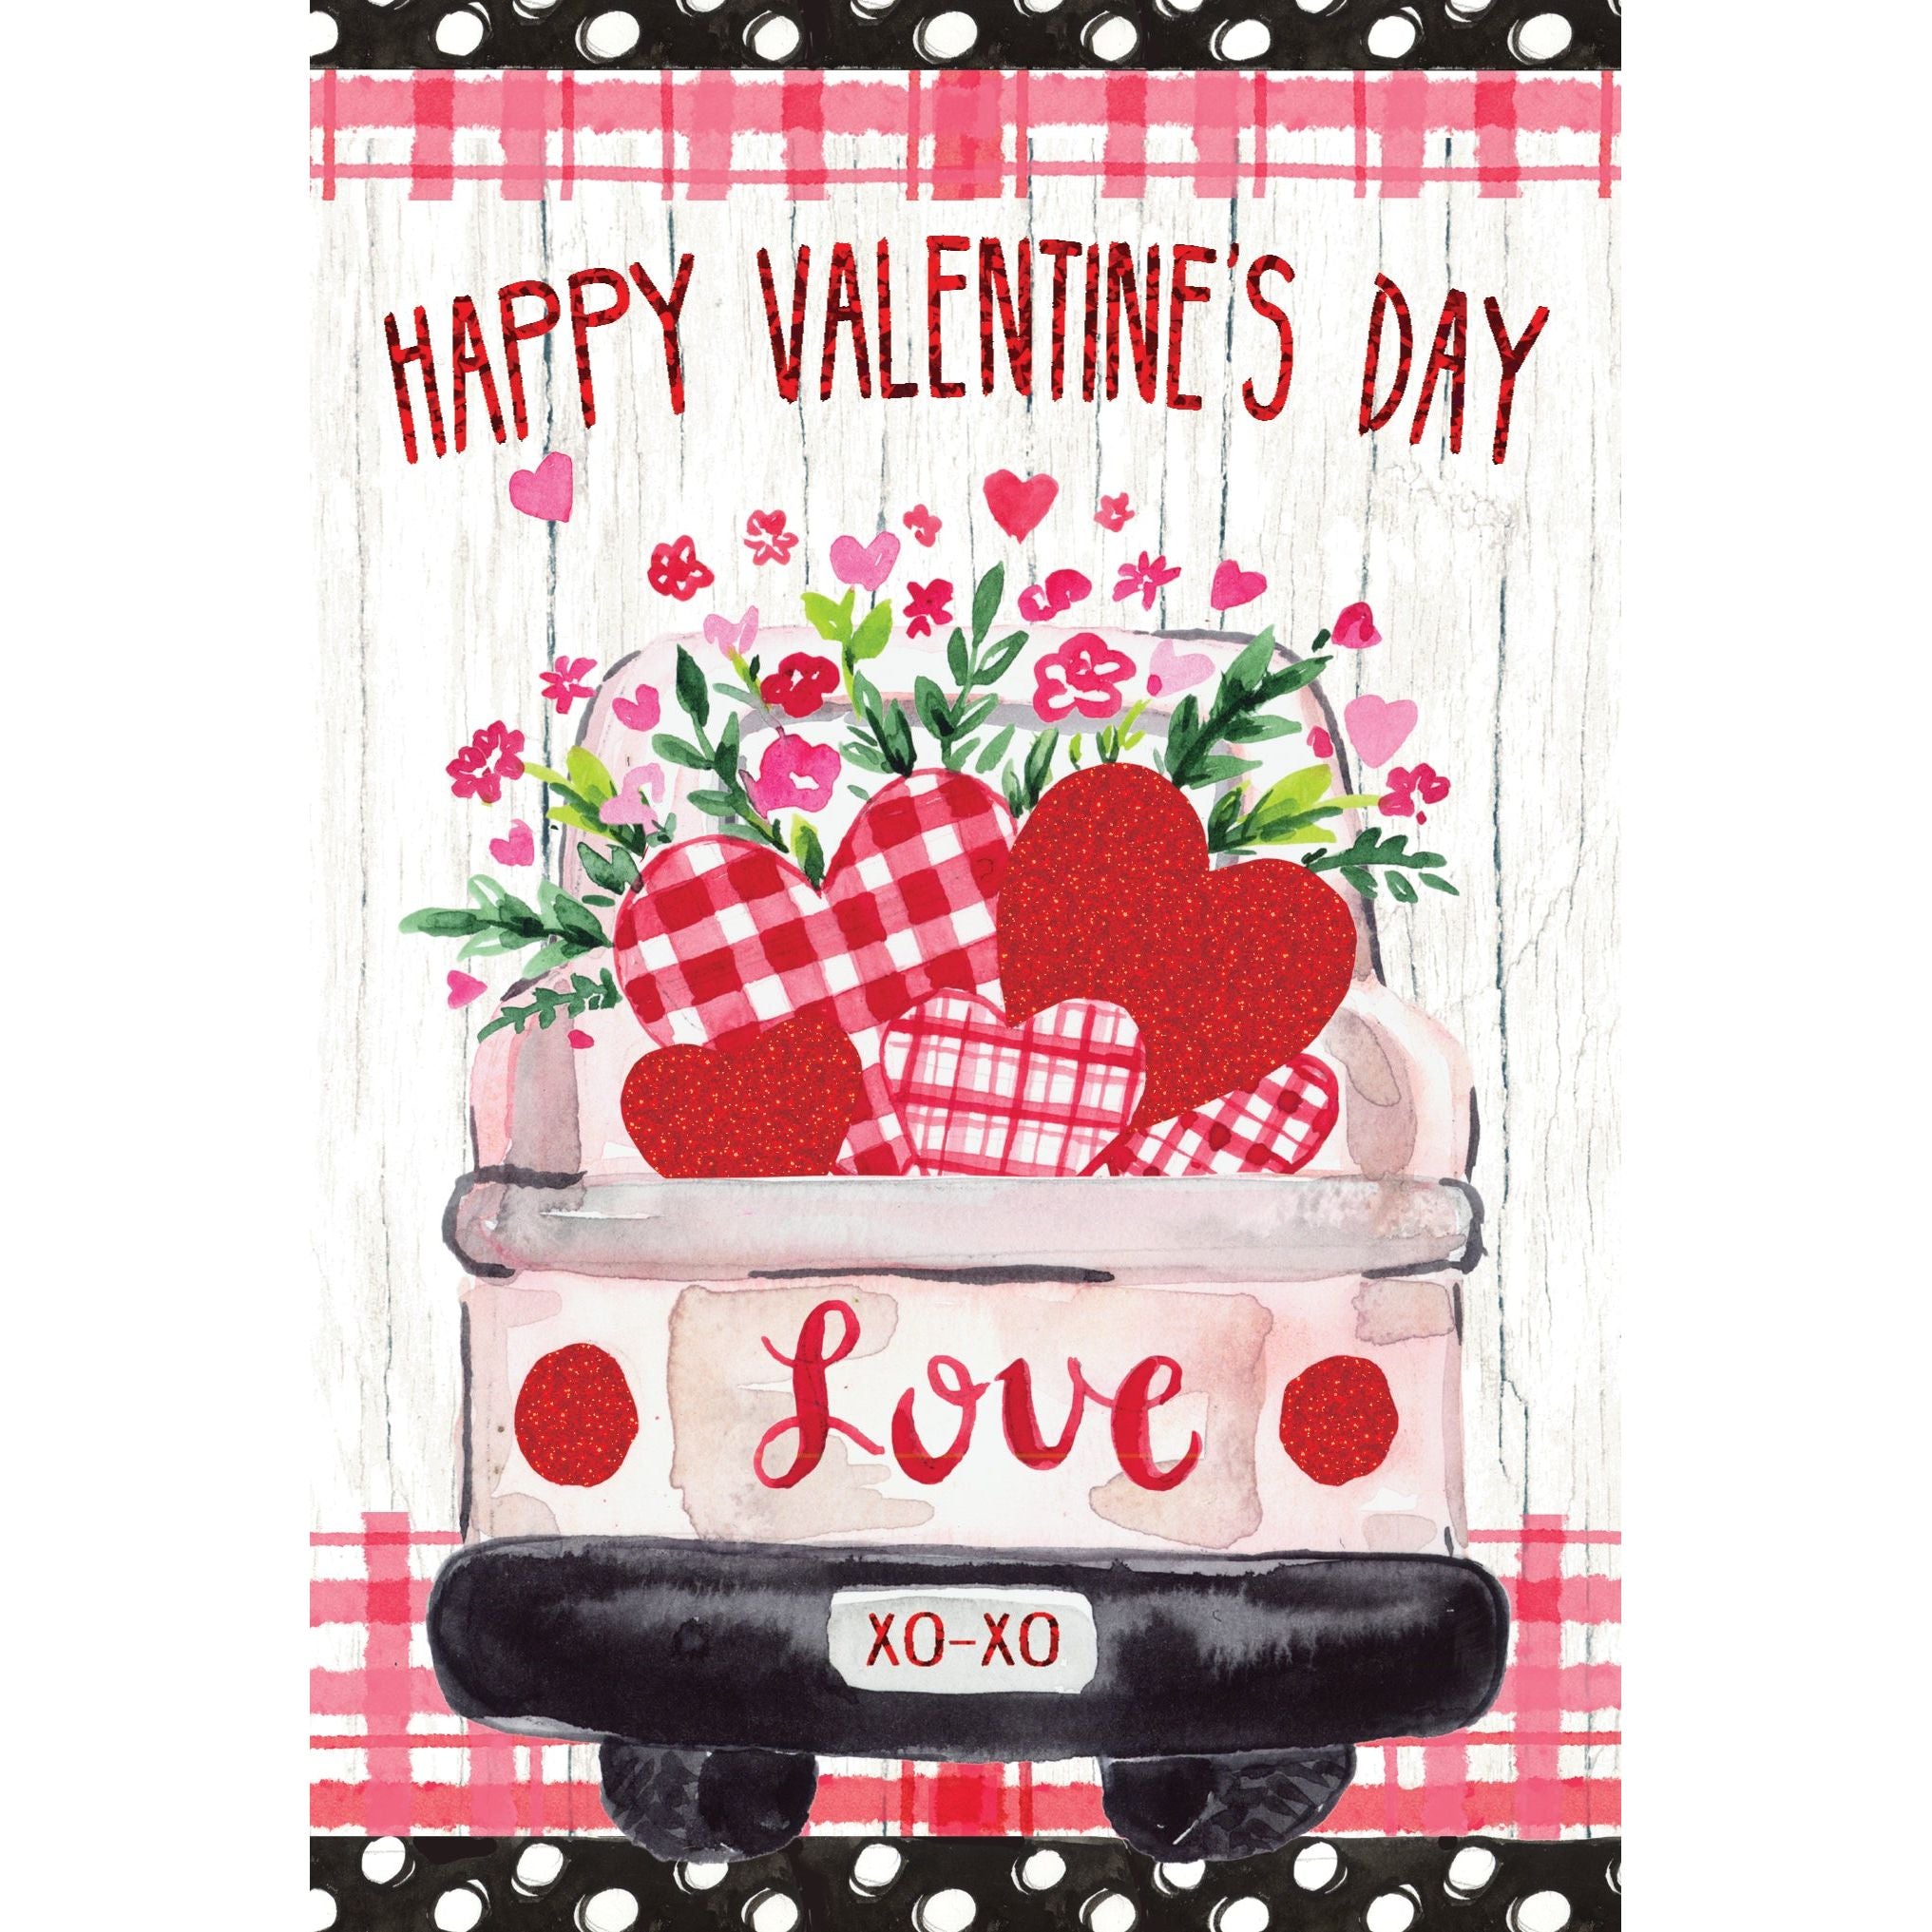 Love Truck Valentine's Day Card